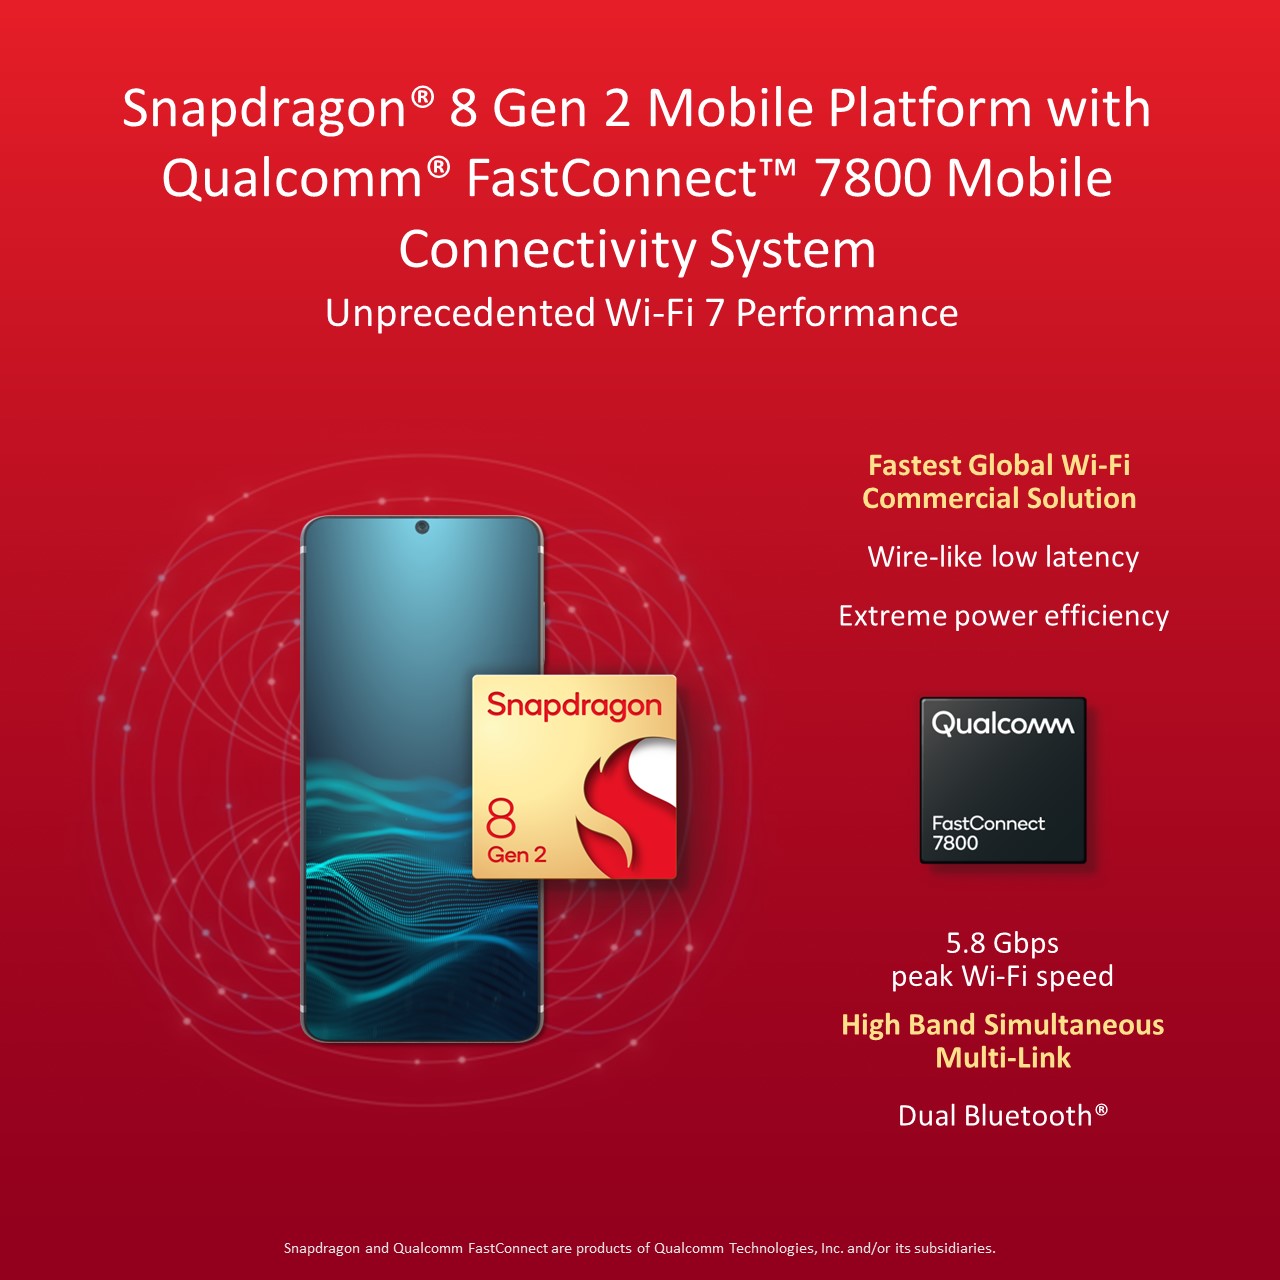 Qualcomm FastConnect 7800 tuo Snapdragon 8 Gen 2:een tuen Wi-Fi 7:lle ja monipuolisille Bluetooth-ominaisuuksille.